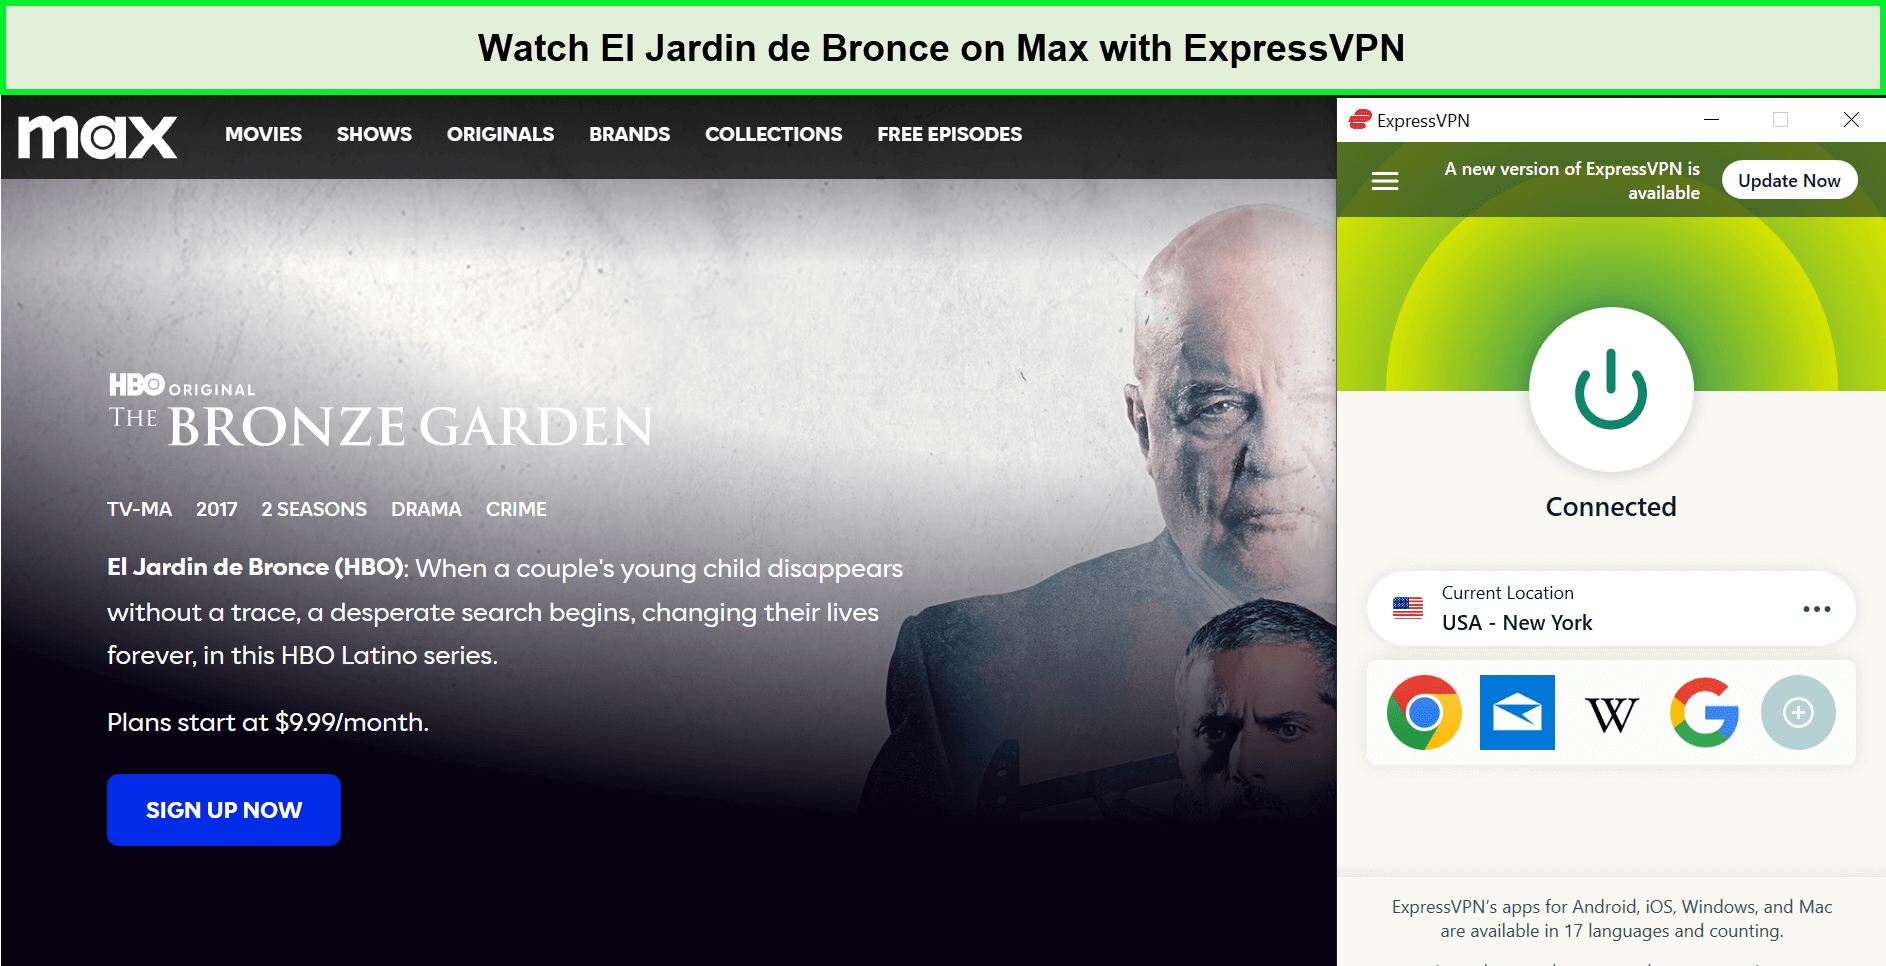 Watch-El-Jardin-de-Bronce-in-Spain-on-Max-with-ExpressVPN